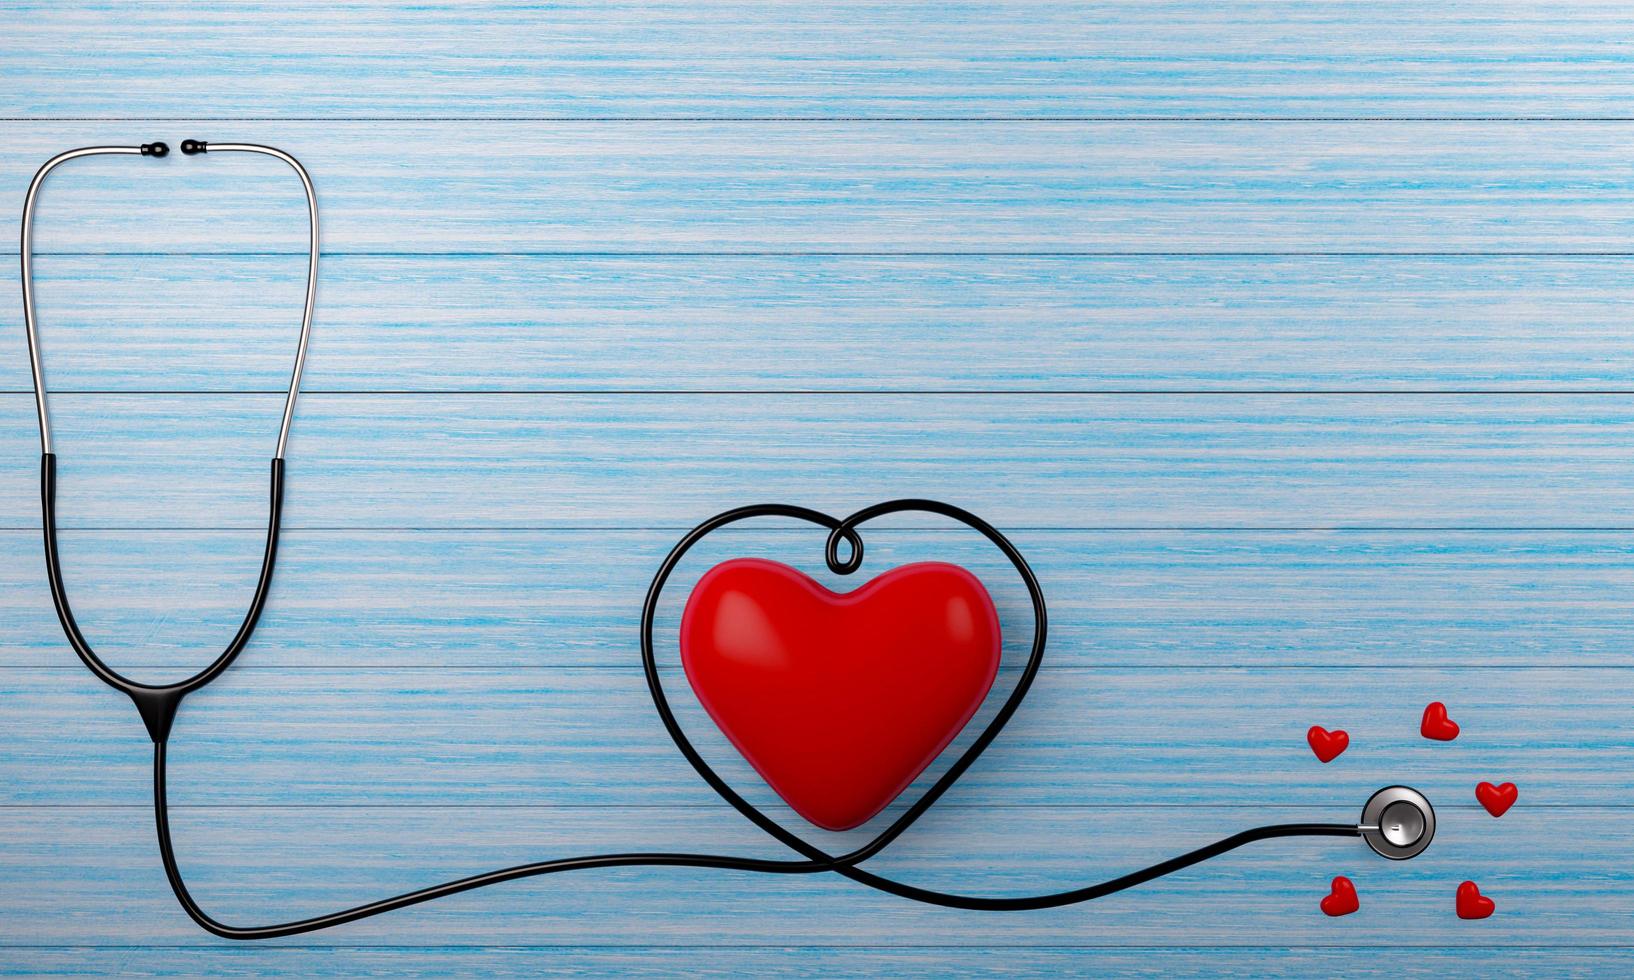 medische stethoscoop en hartpuls rood op de blauwe plankenvloer. kleine en grote rode hartvormige modellen. 3D-rendering. foto